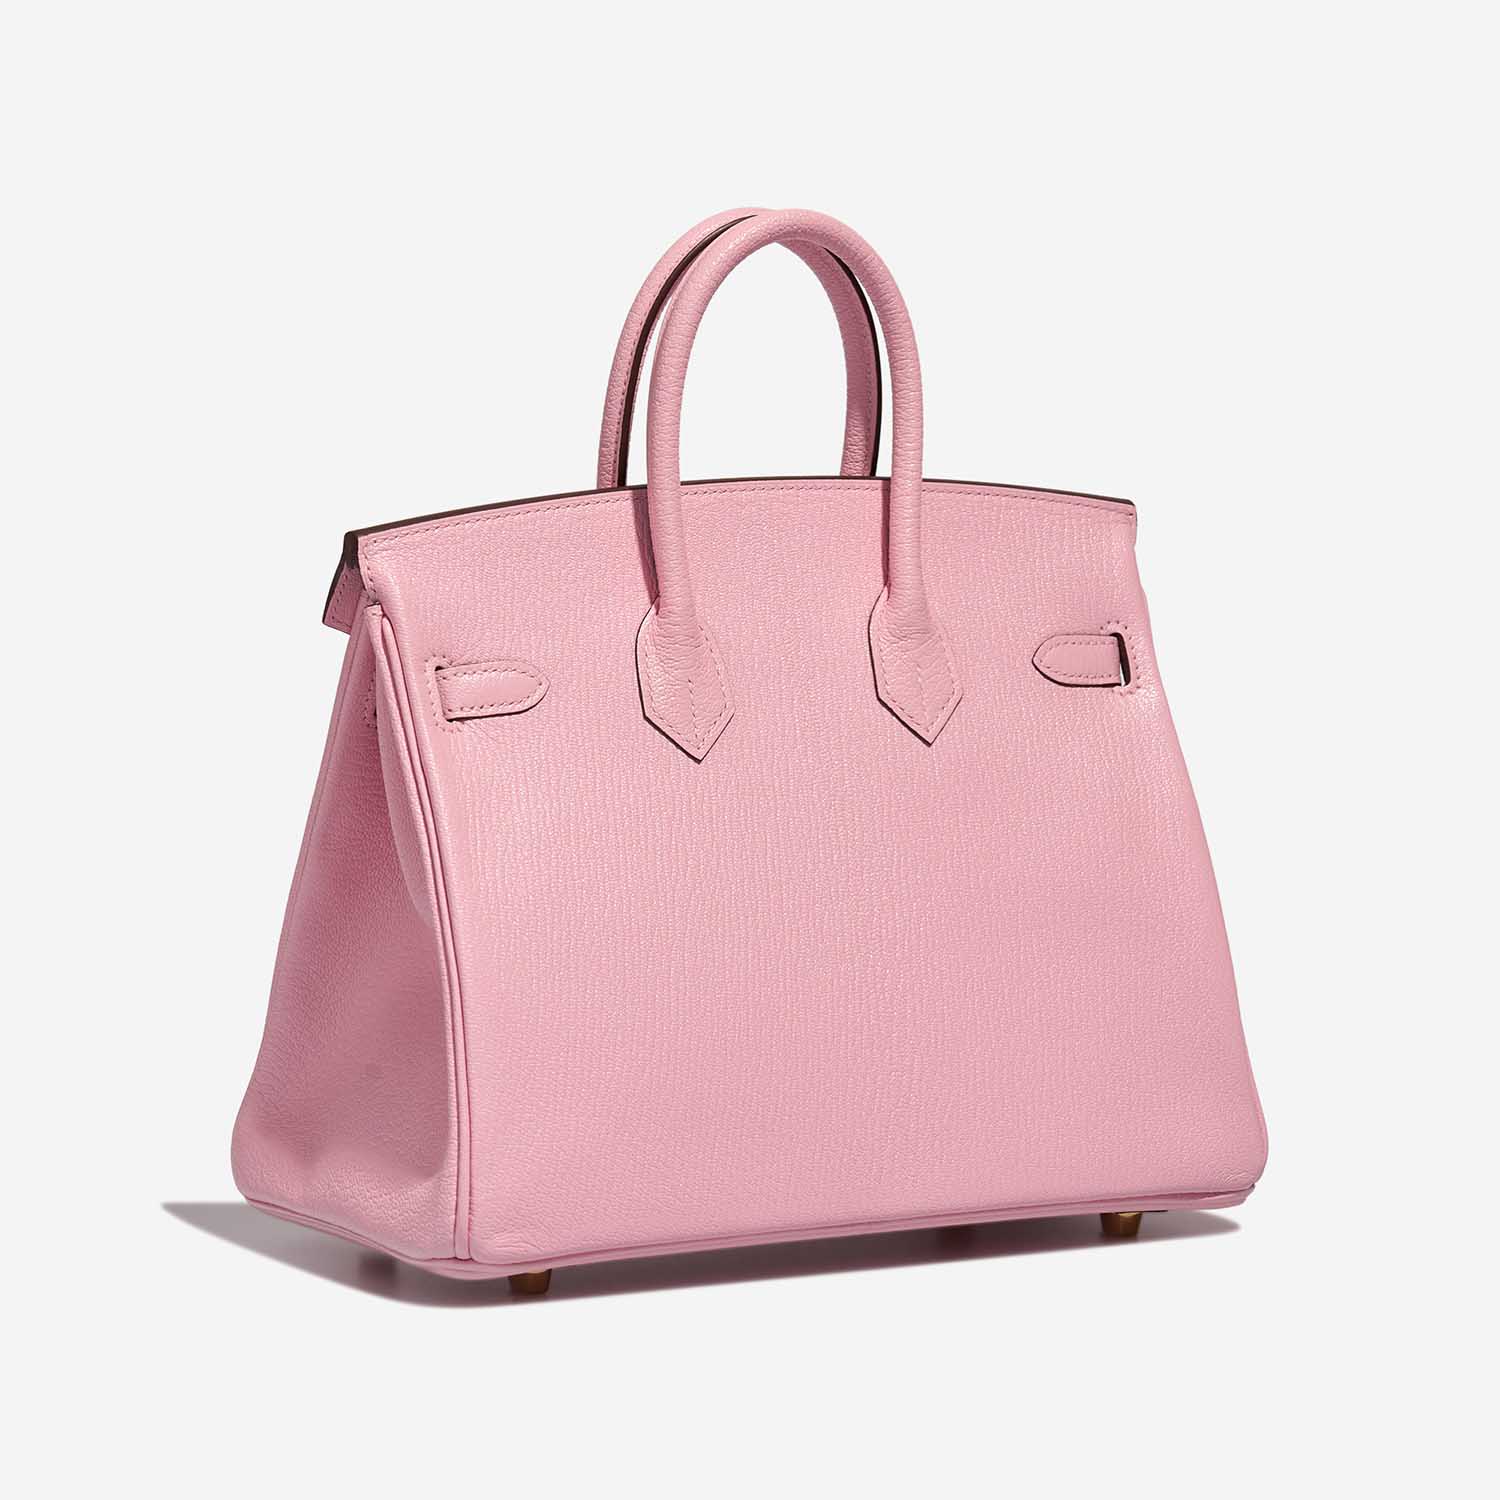 Hermès Birkin 25 RoseSakura Side Back | Verkaufen Sie Ihre Designer-Tasche auf Saclab.com